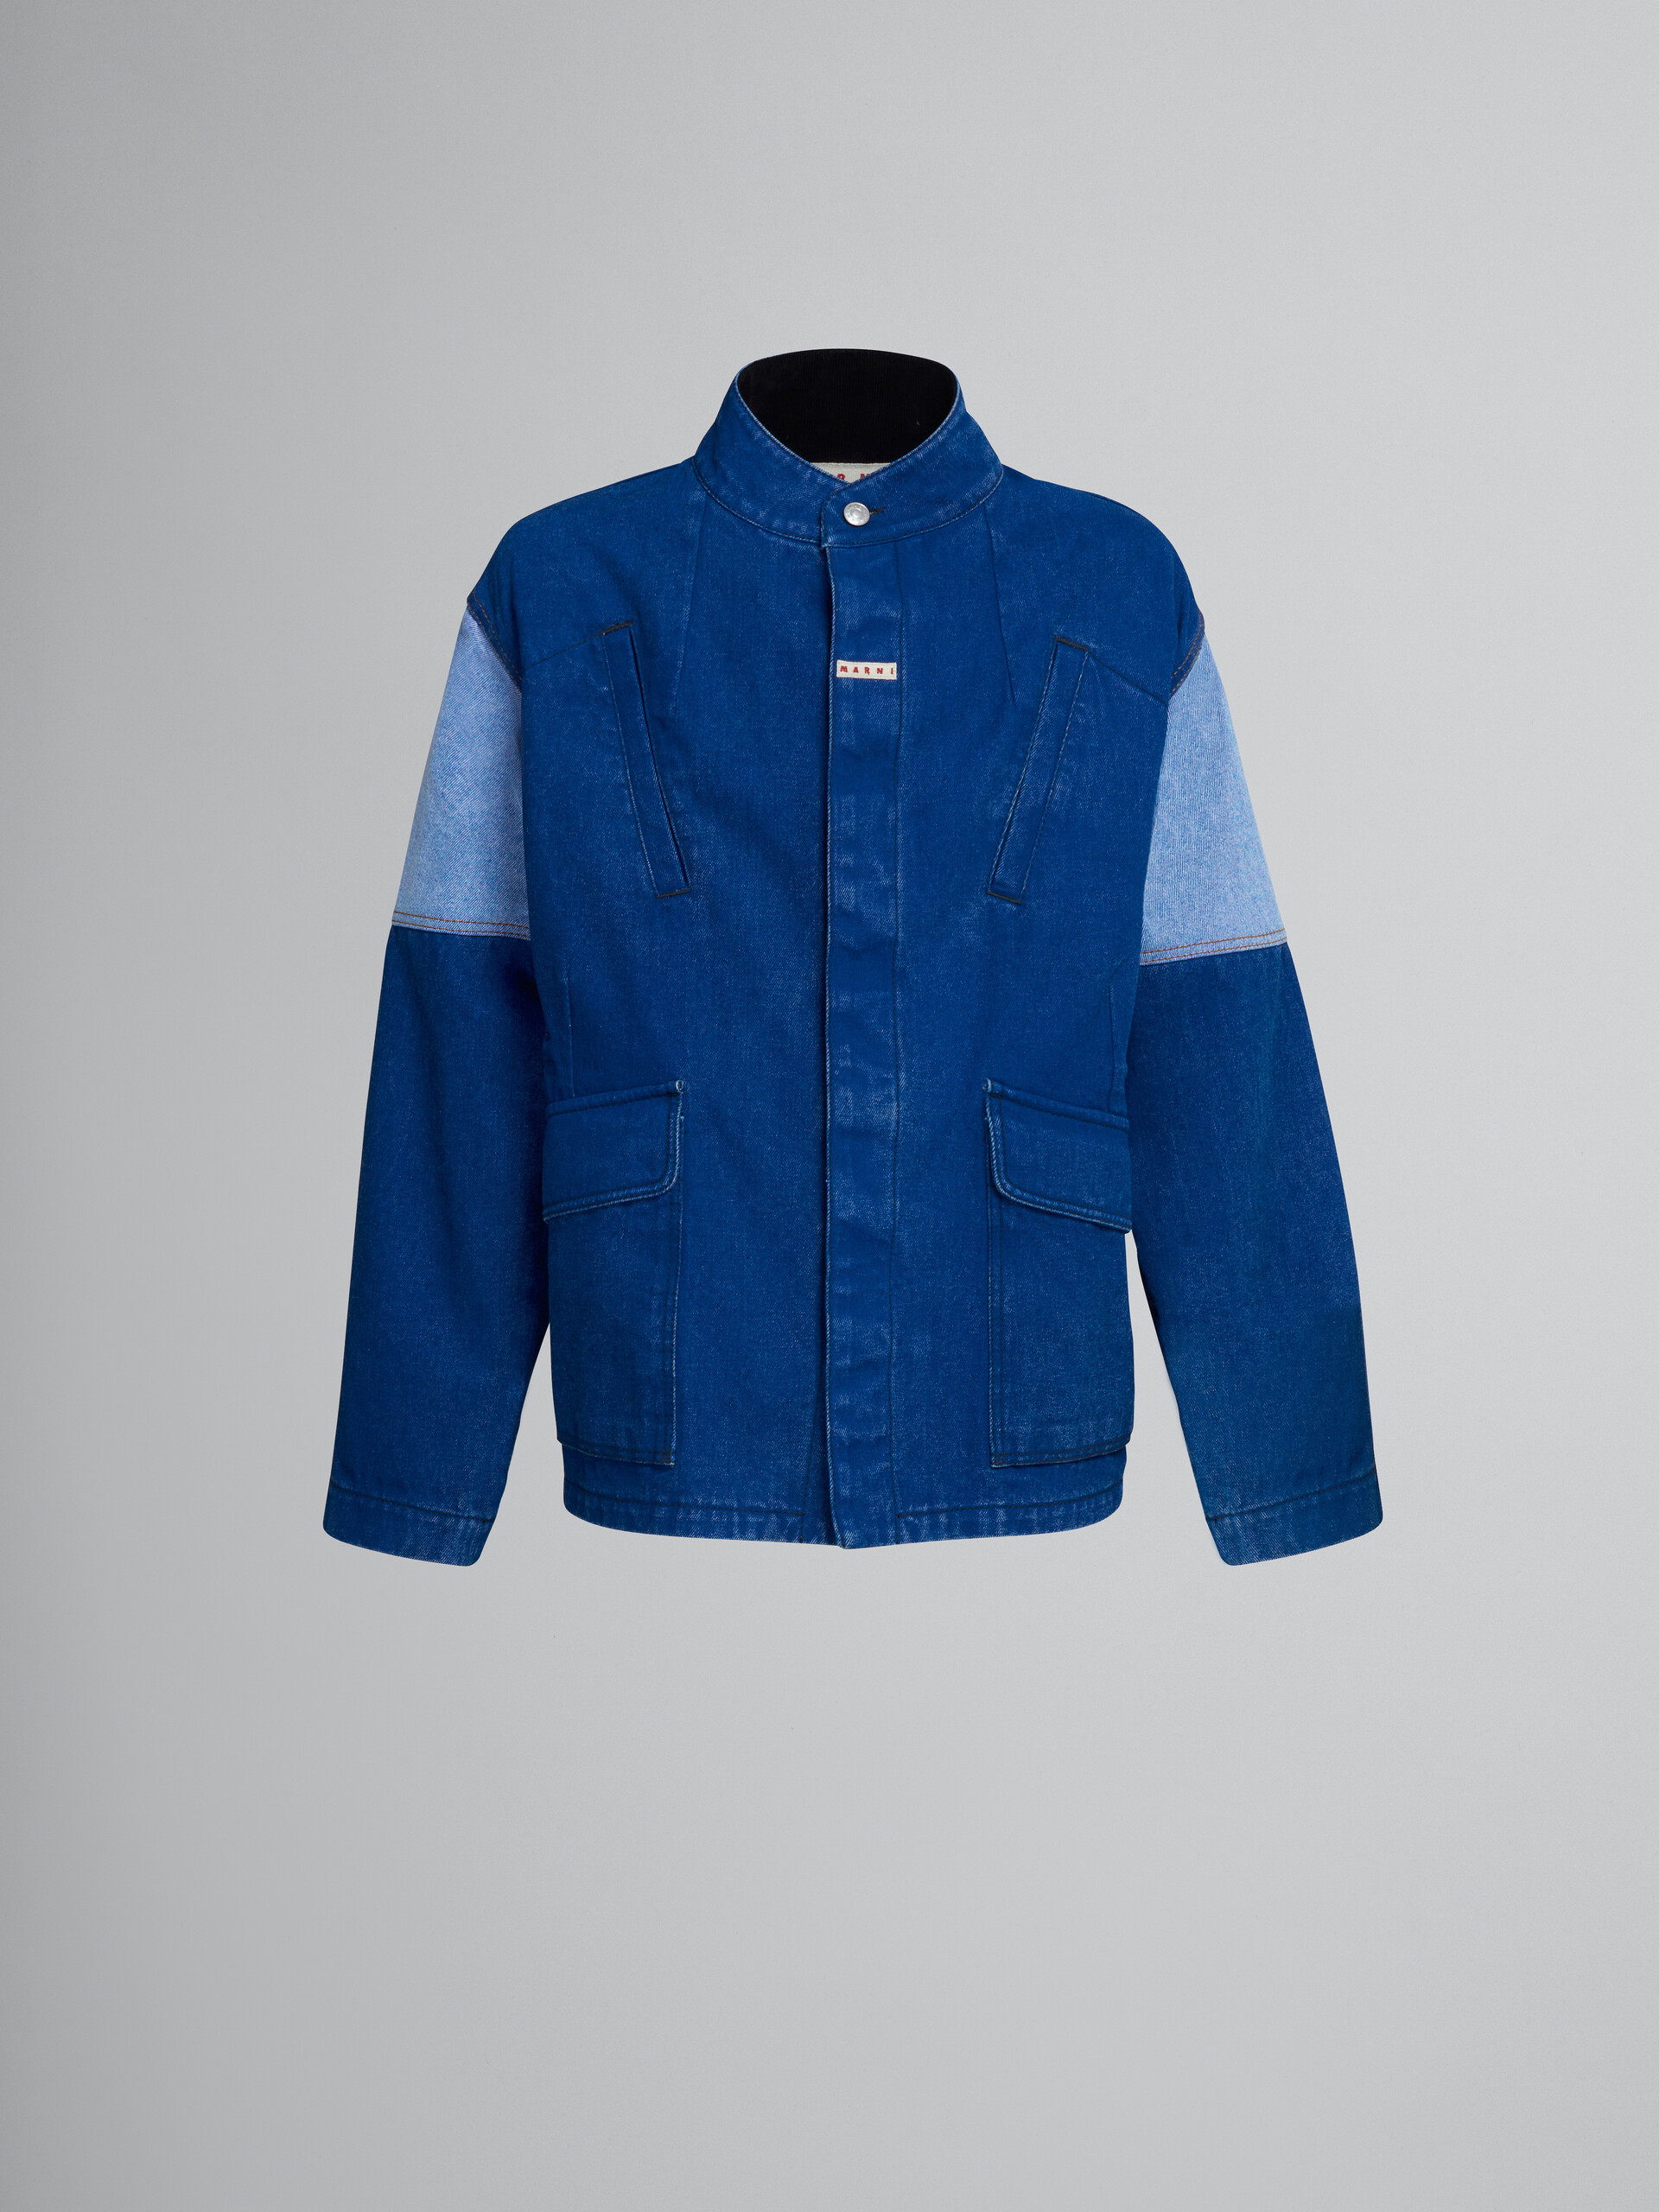 Jacket in coated blue denim - Jackets - Image 1